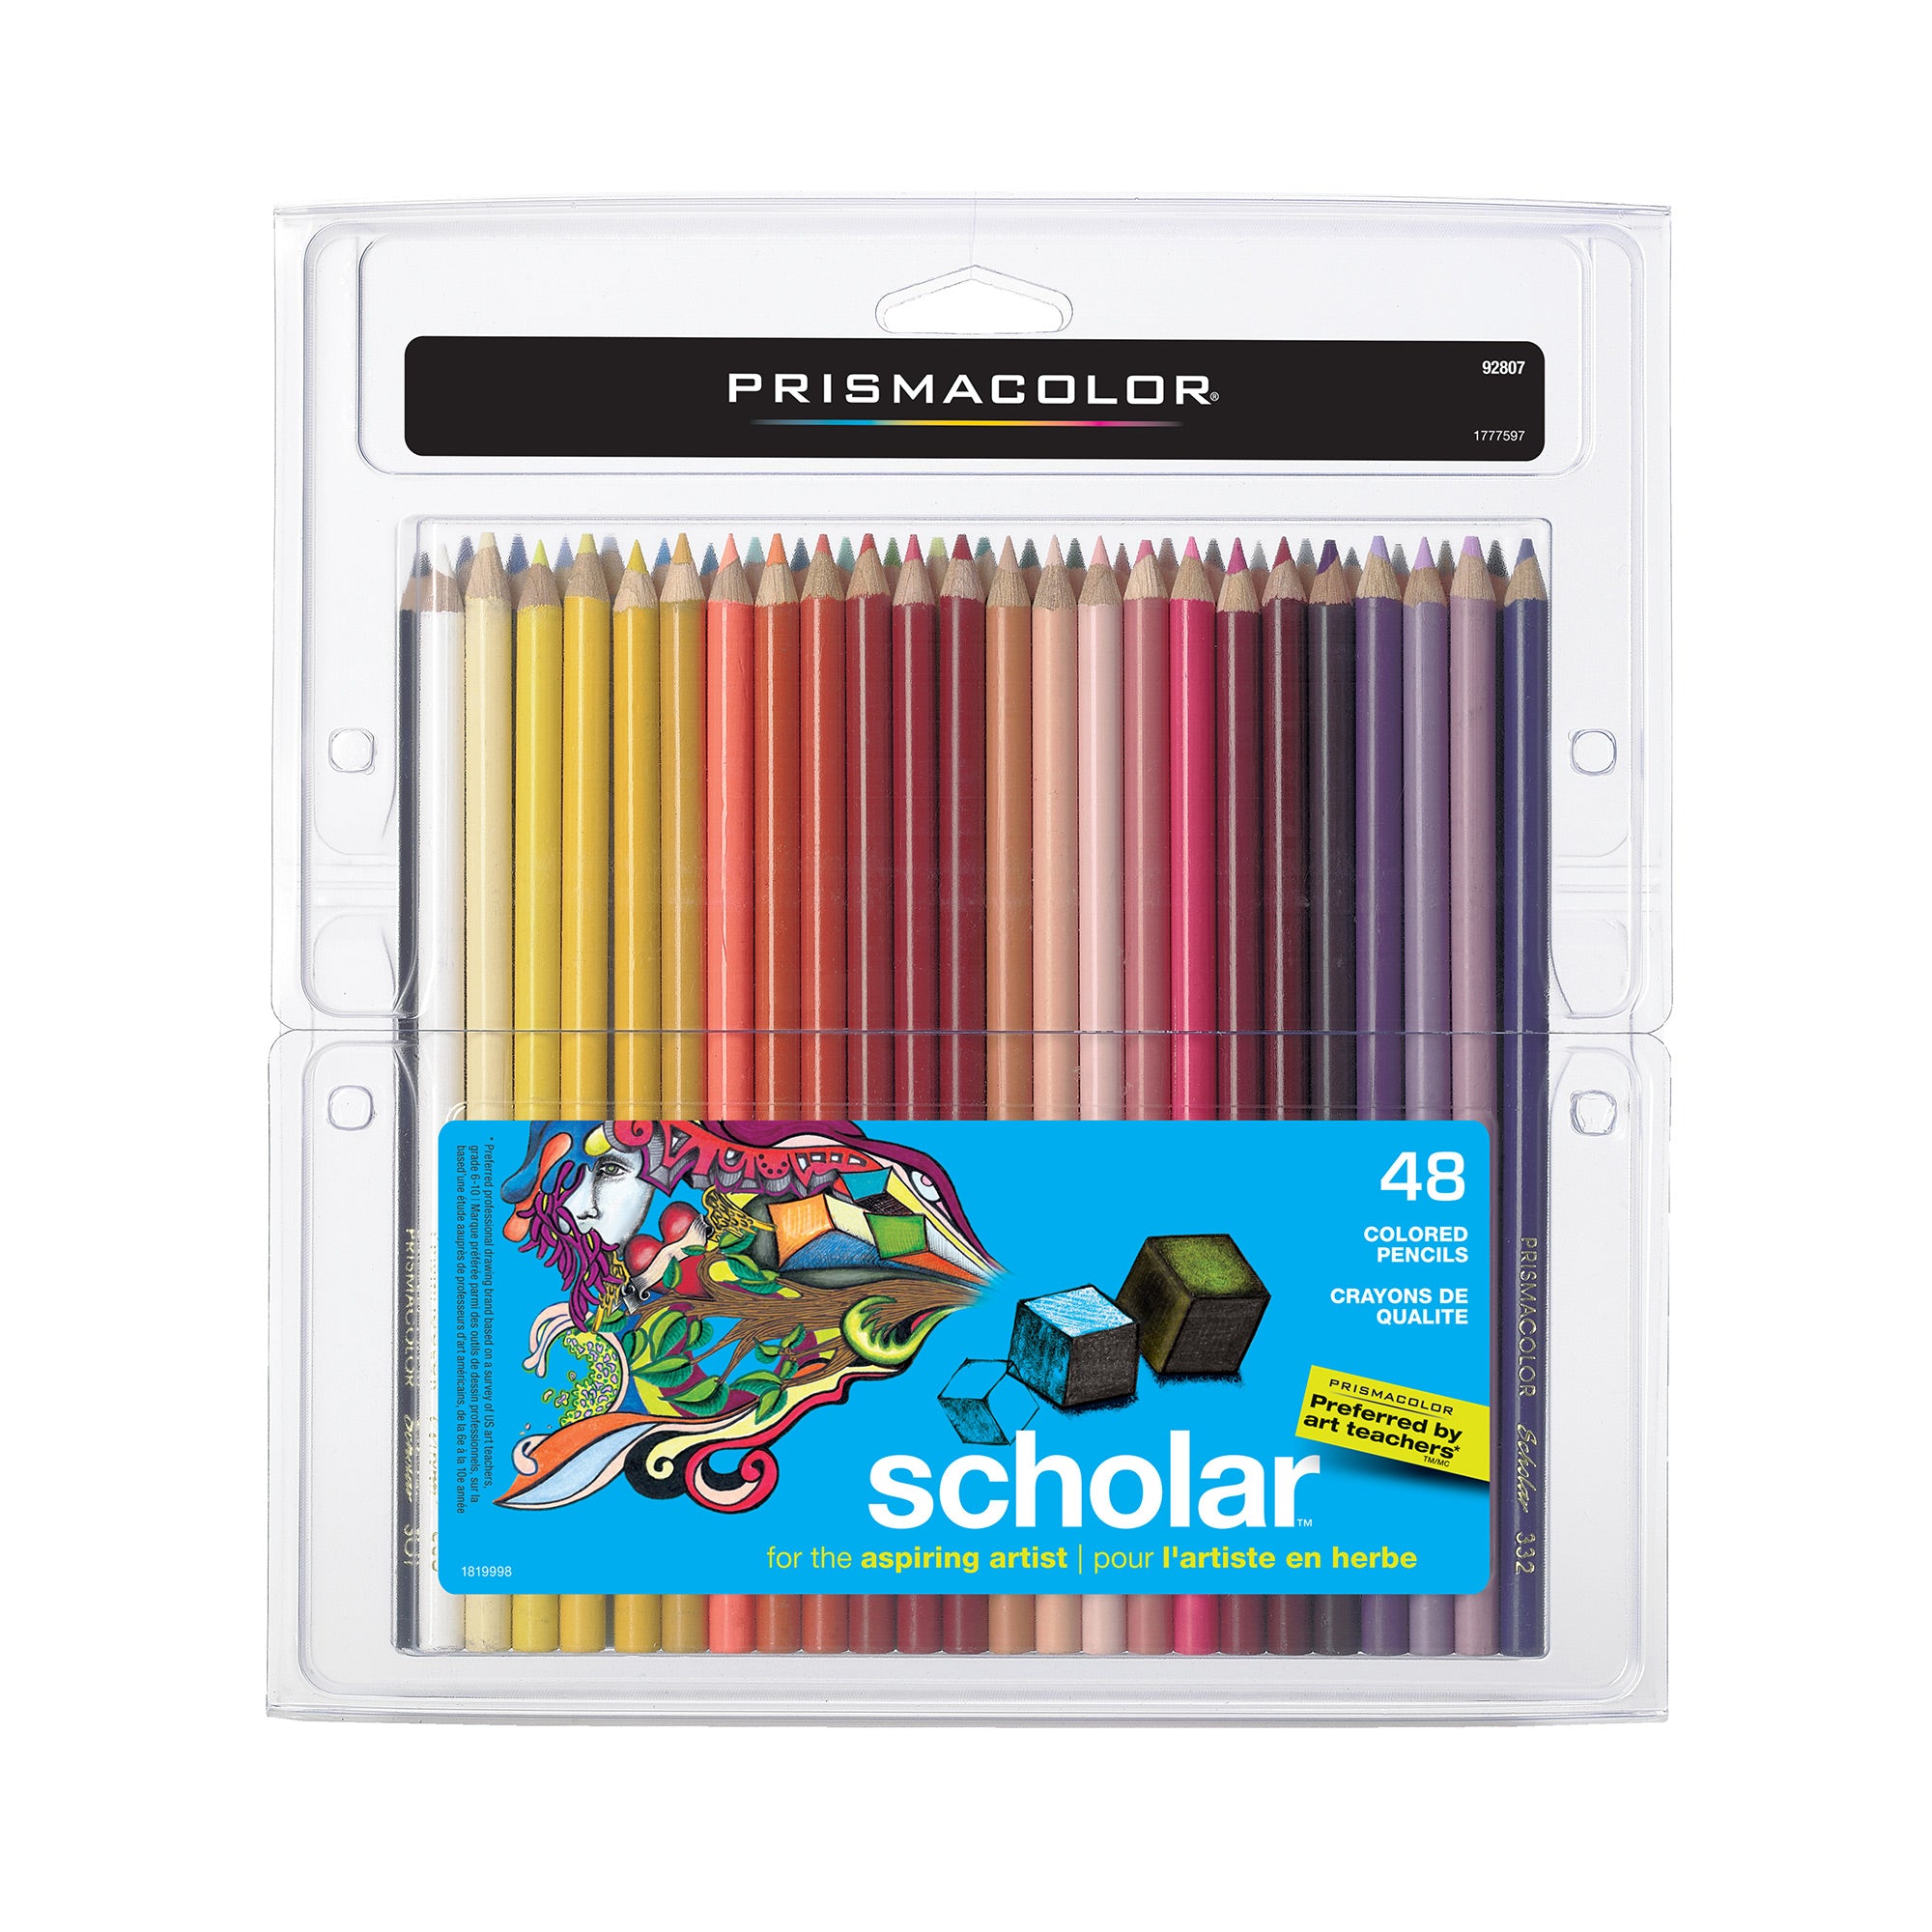 Arrtx Premium Série de 72 Crayons de Couleur Mines Colorées à Noyeau Souple  a